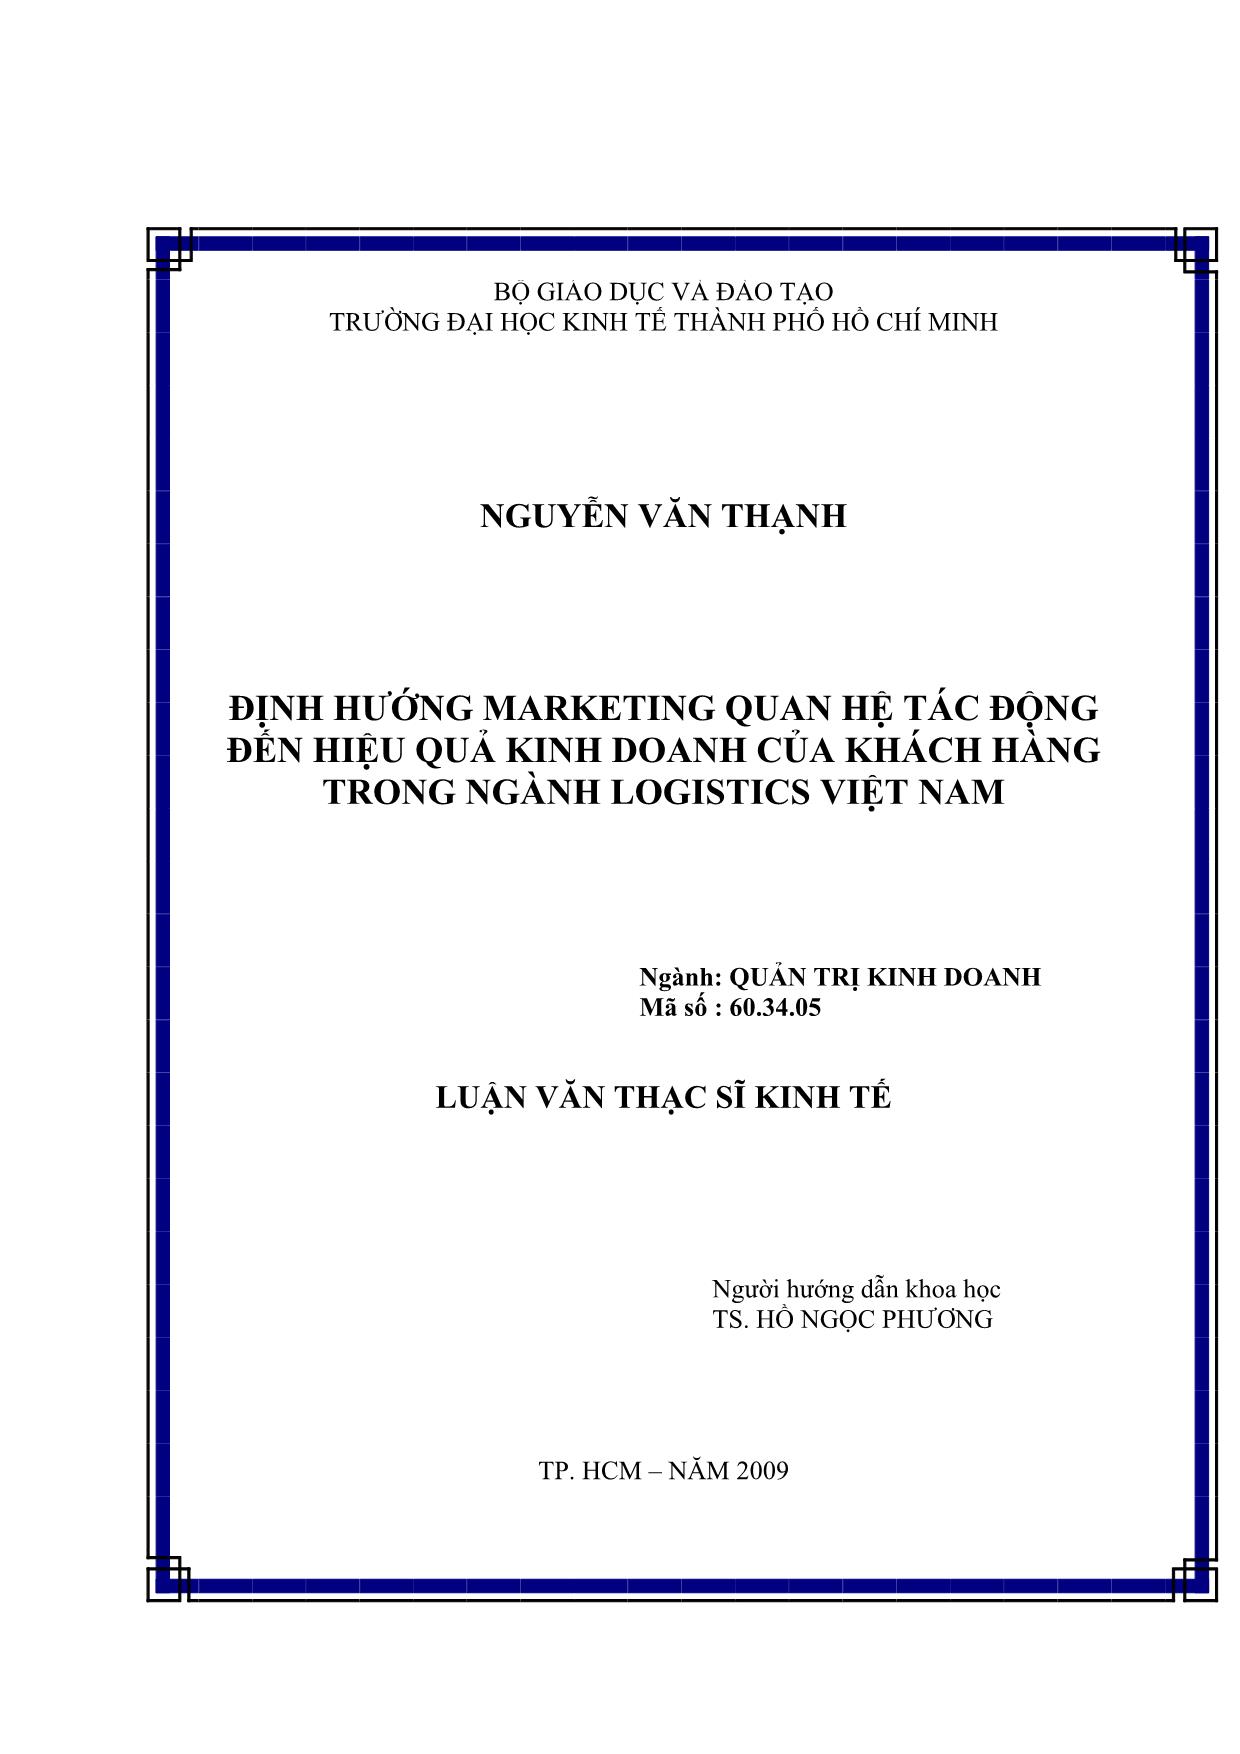 Luận văn Định hướng Marketing quan hệ tác động đến hiệu quả kinh doanh của khách hàng trong ngành Logistics Việt Nam trang 1